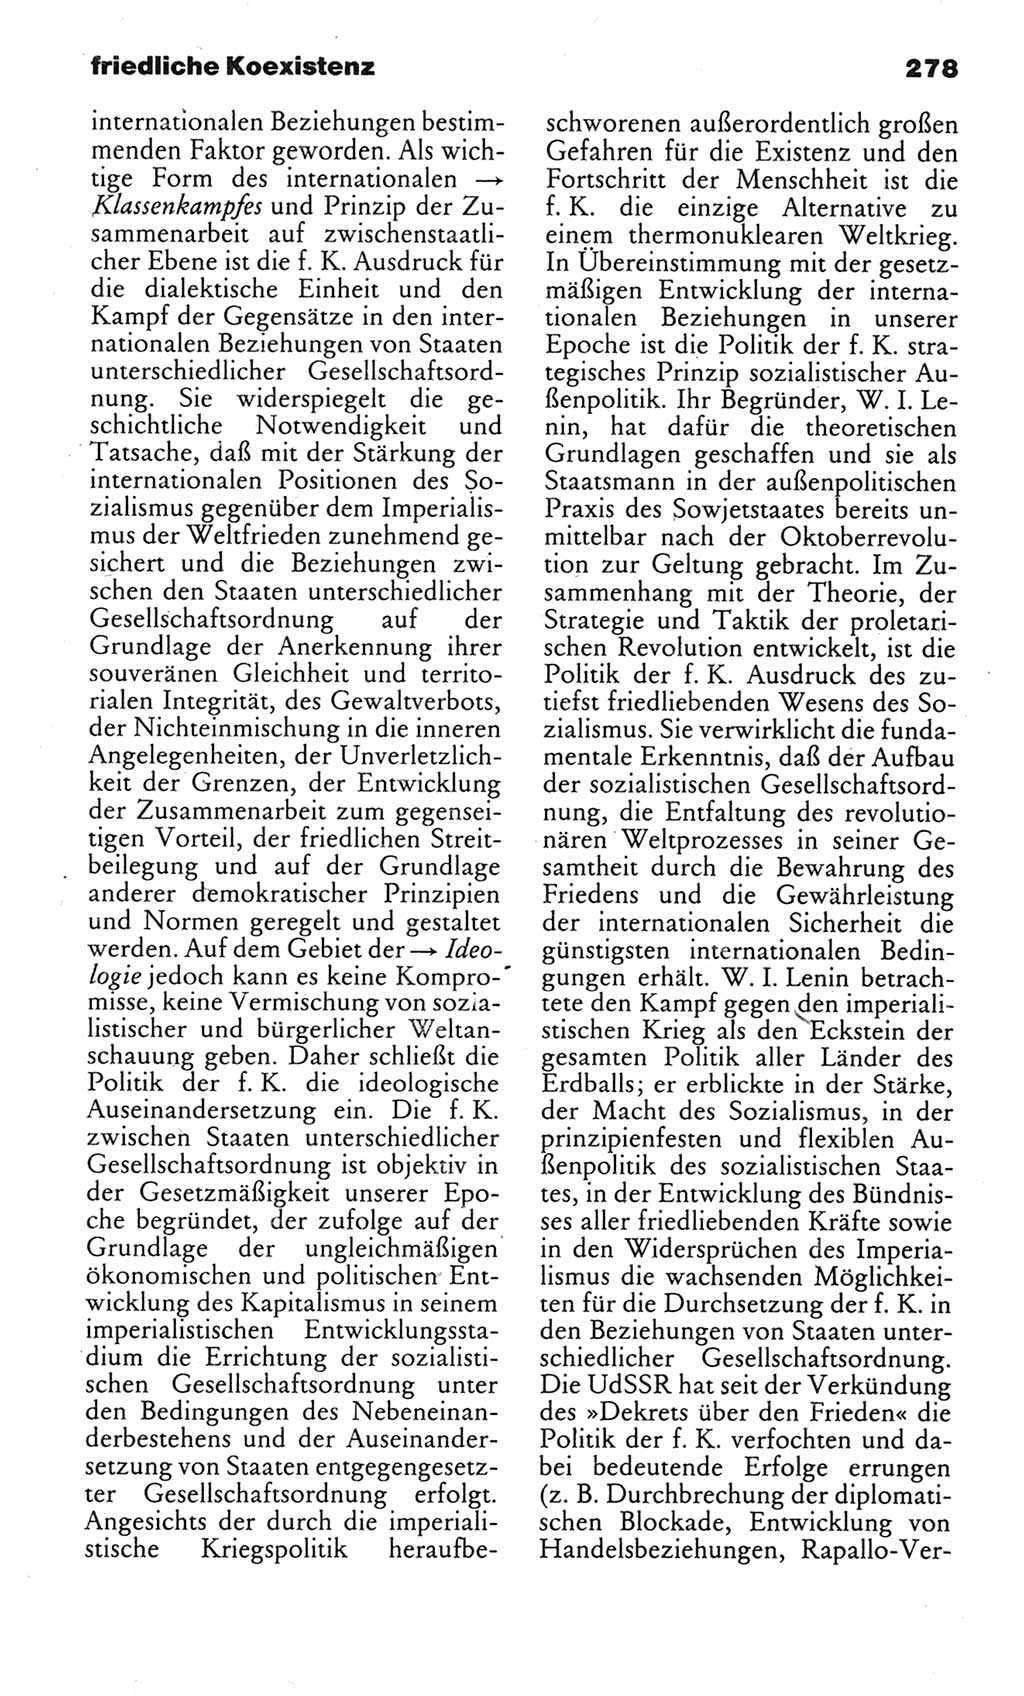 Kleines politisches Wörterbuch [Deutsche Demokratische Republik (DDR)] 1983, Seite 278 (Kl. pol. Wb. DDR 1983, S. 278)